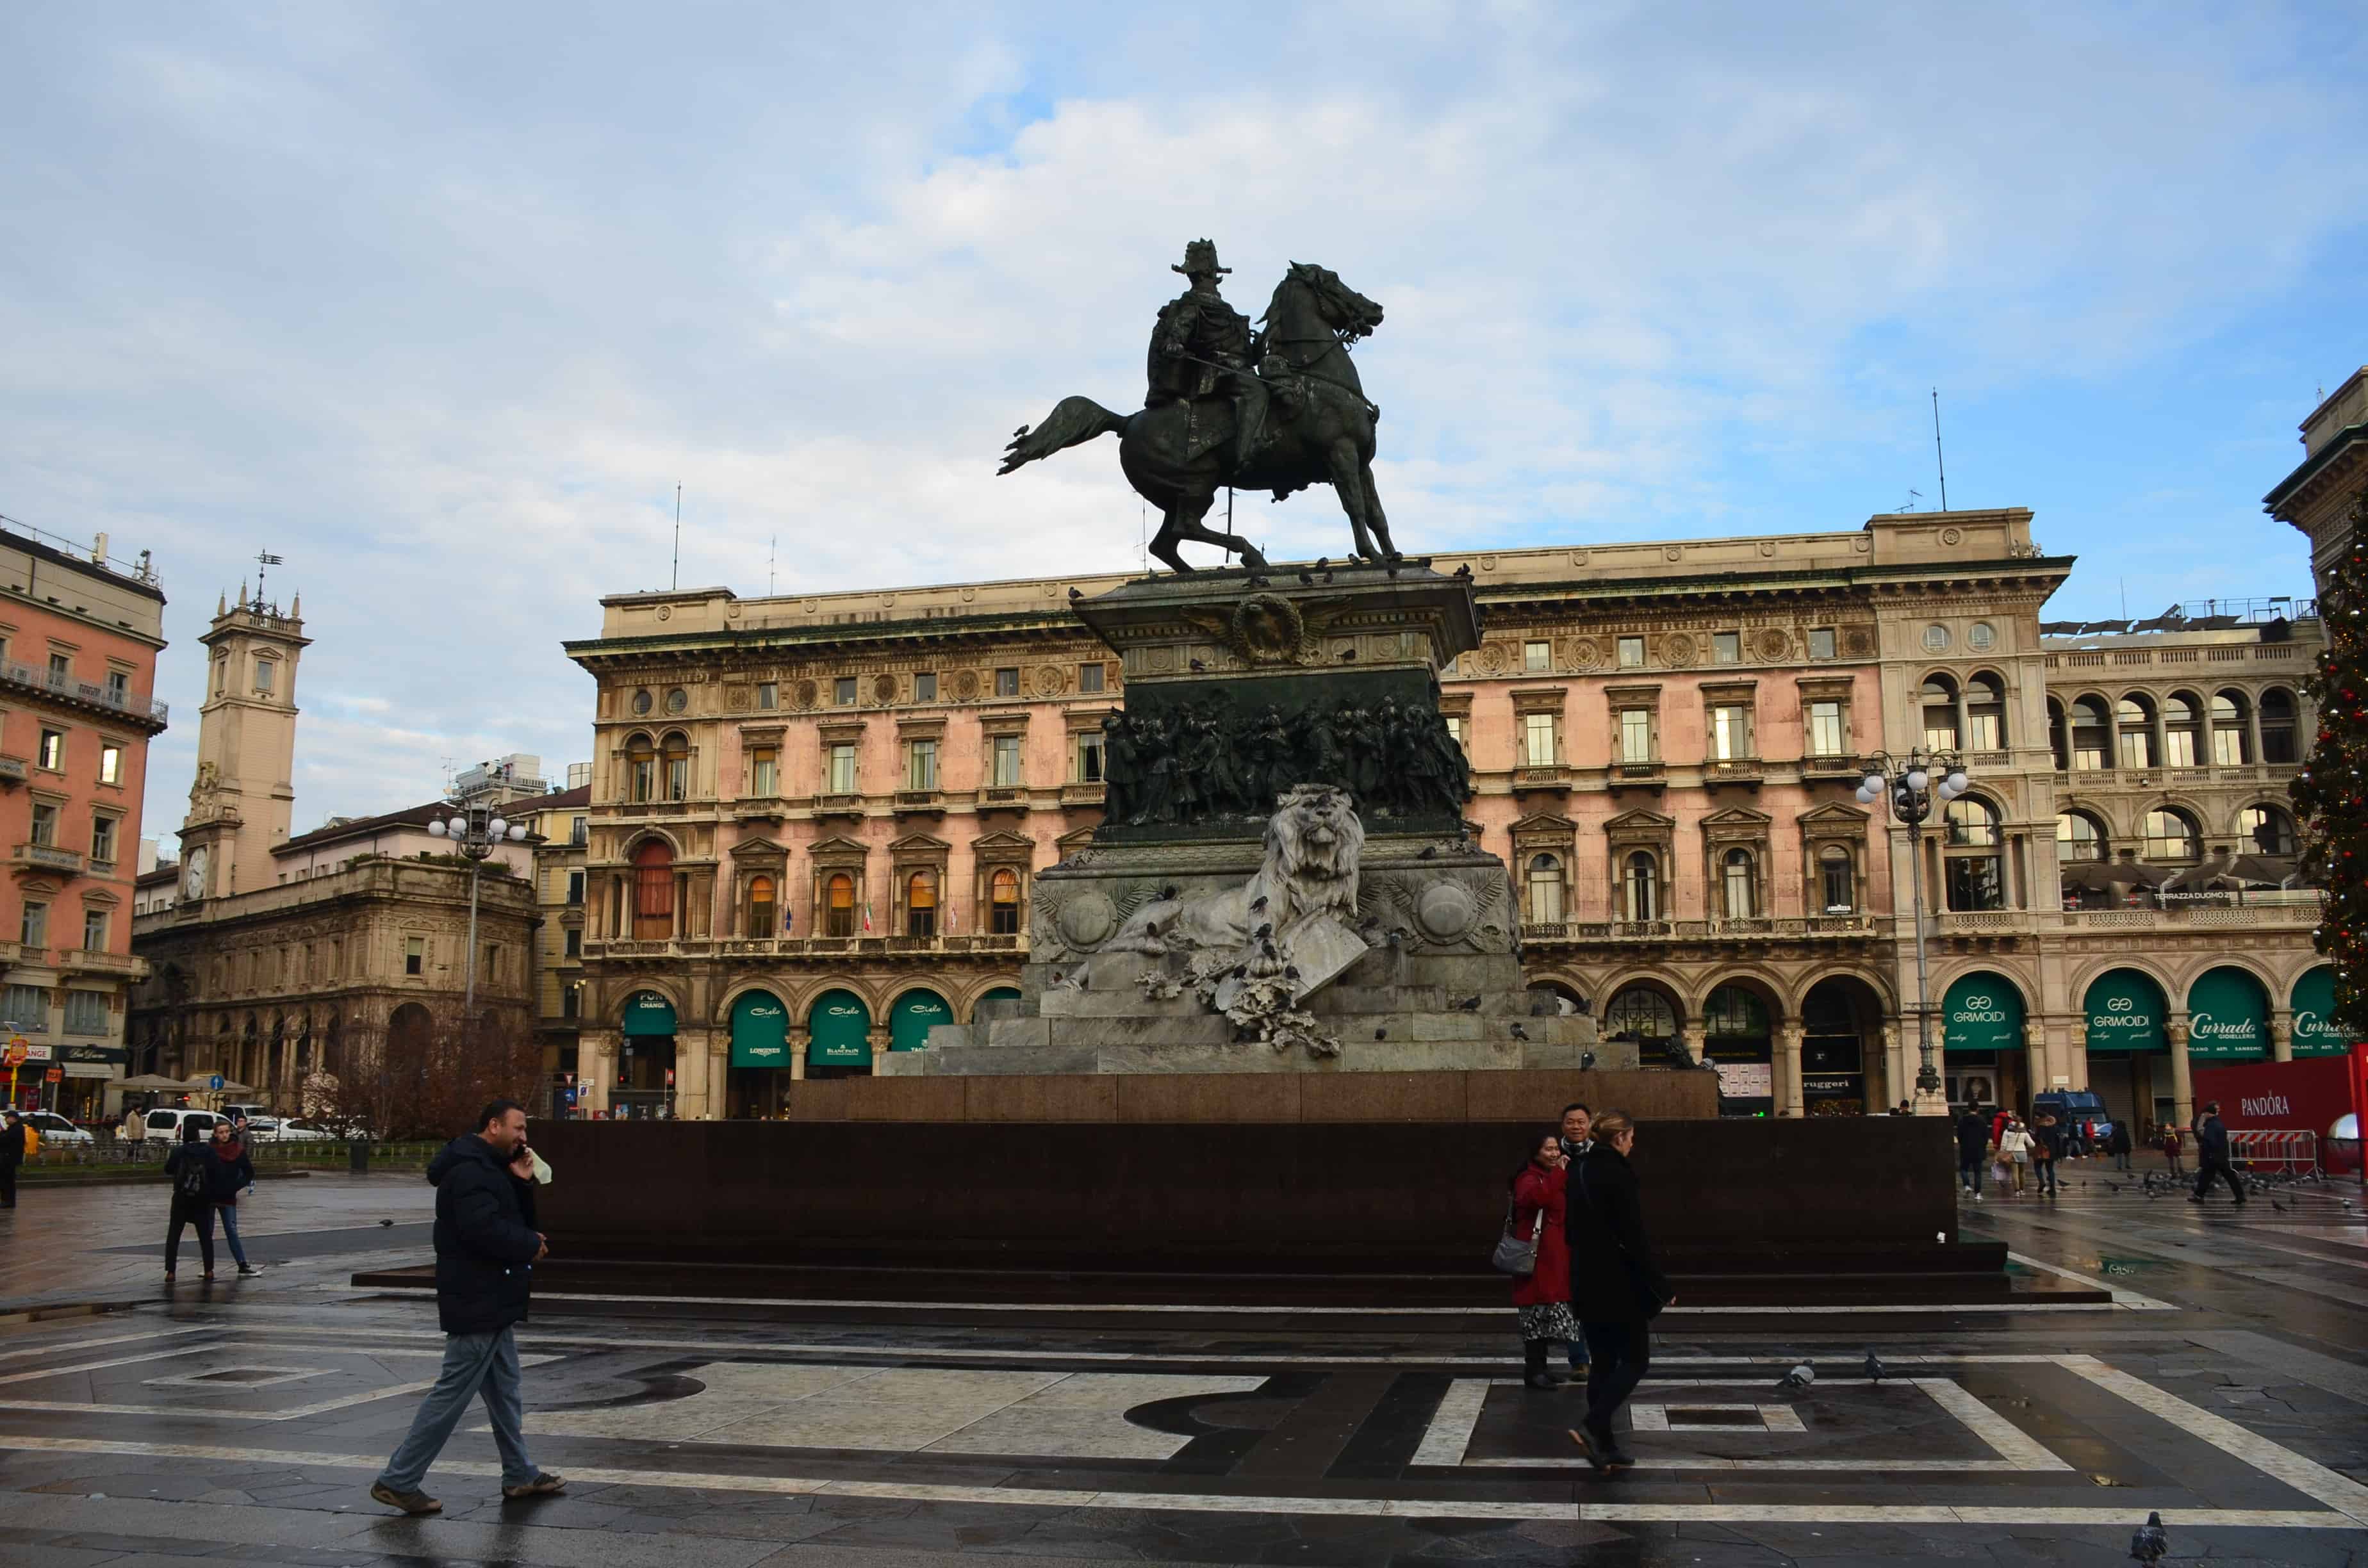 Vittorio Emanuele II monument in Milan, Italy